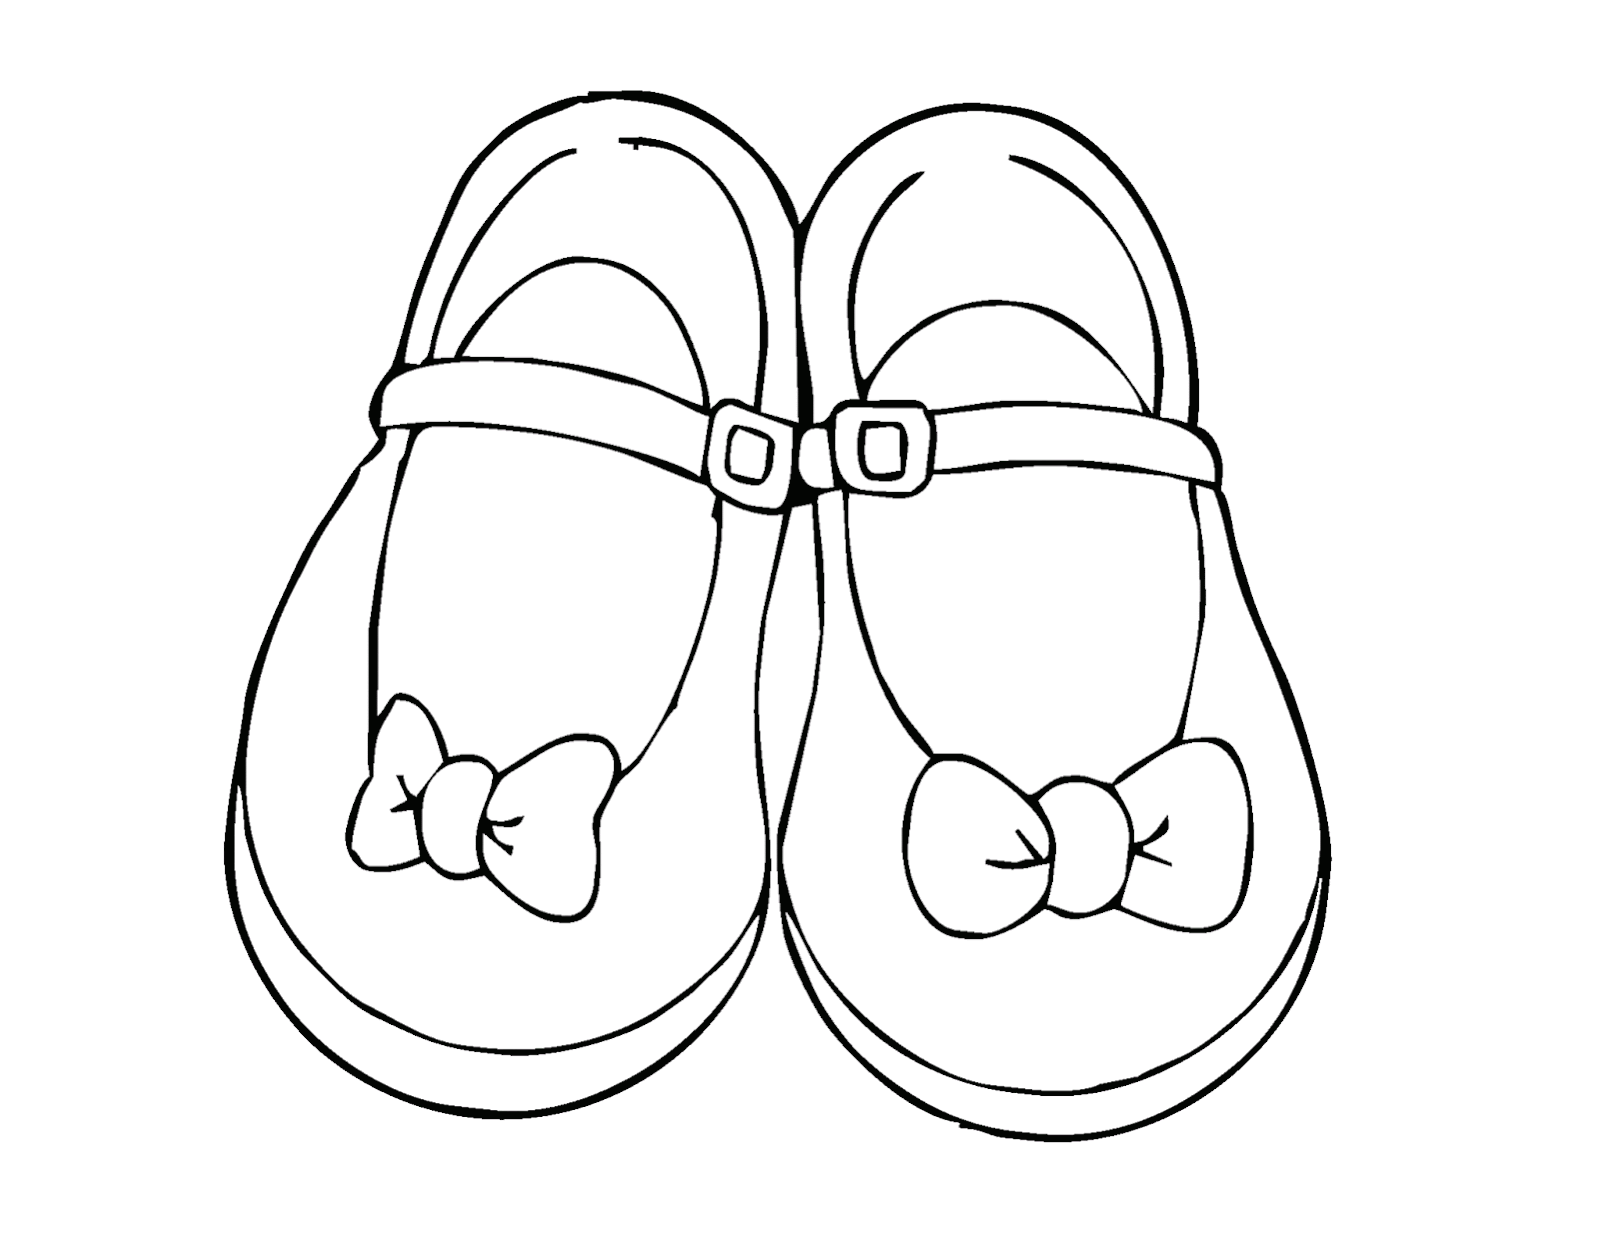 Gambar Mewarnai Sepatu Sekolah Gambarmewarnai2019